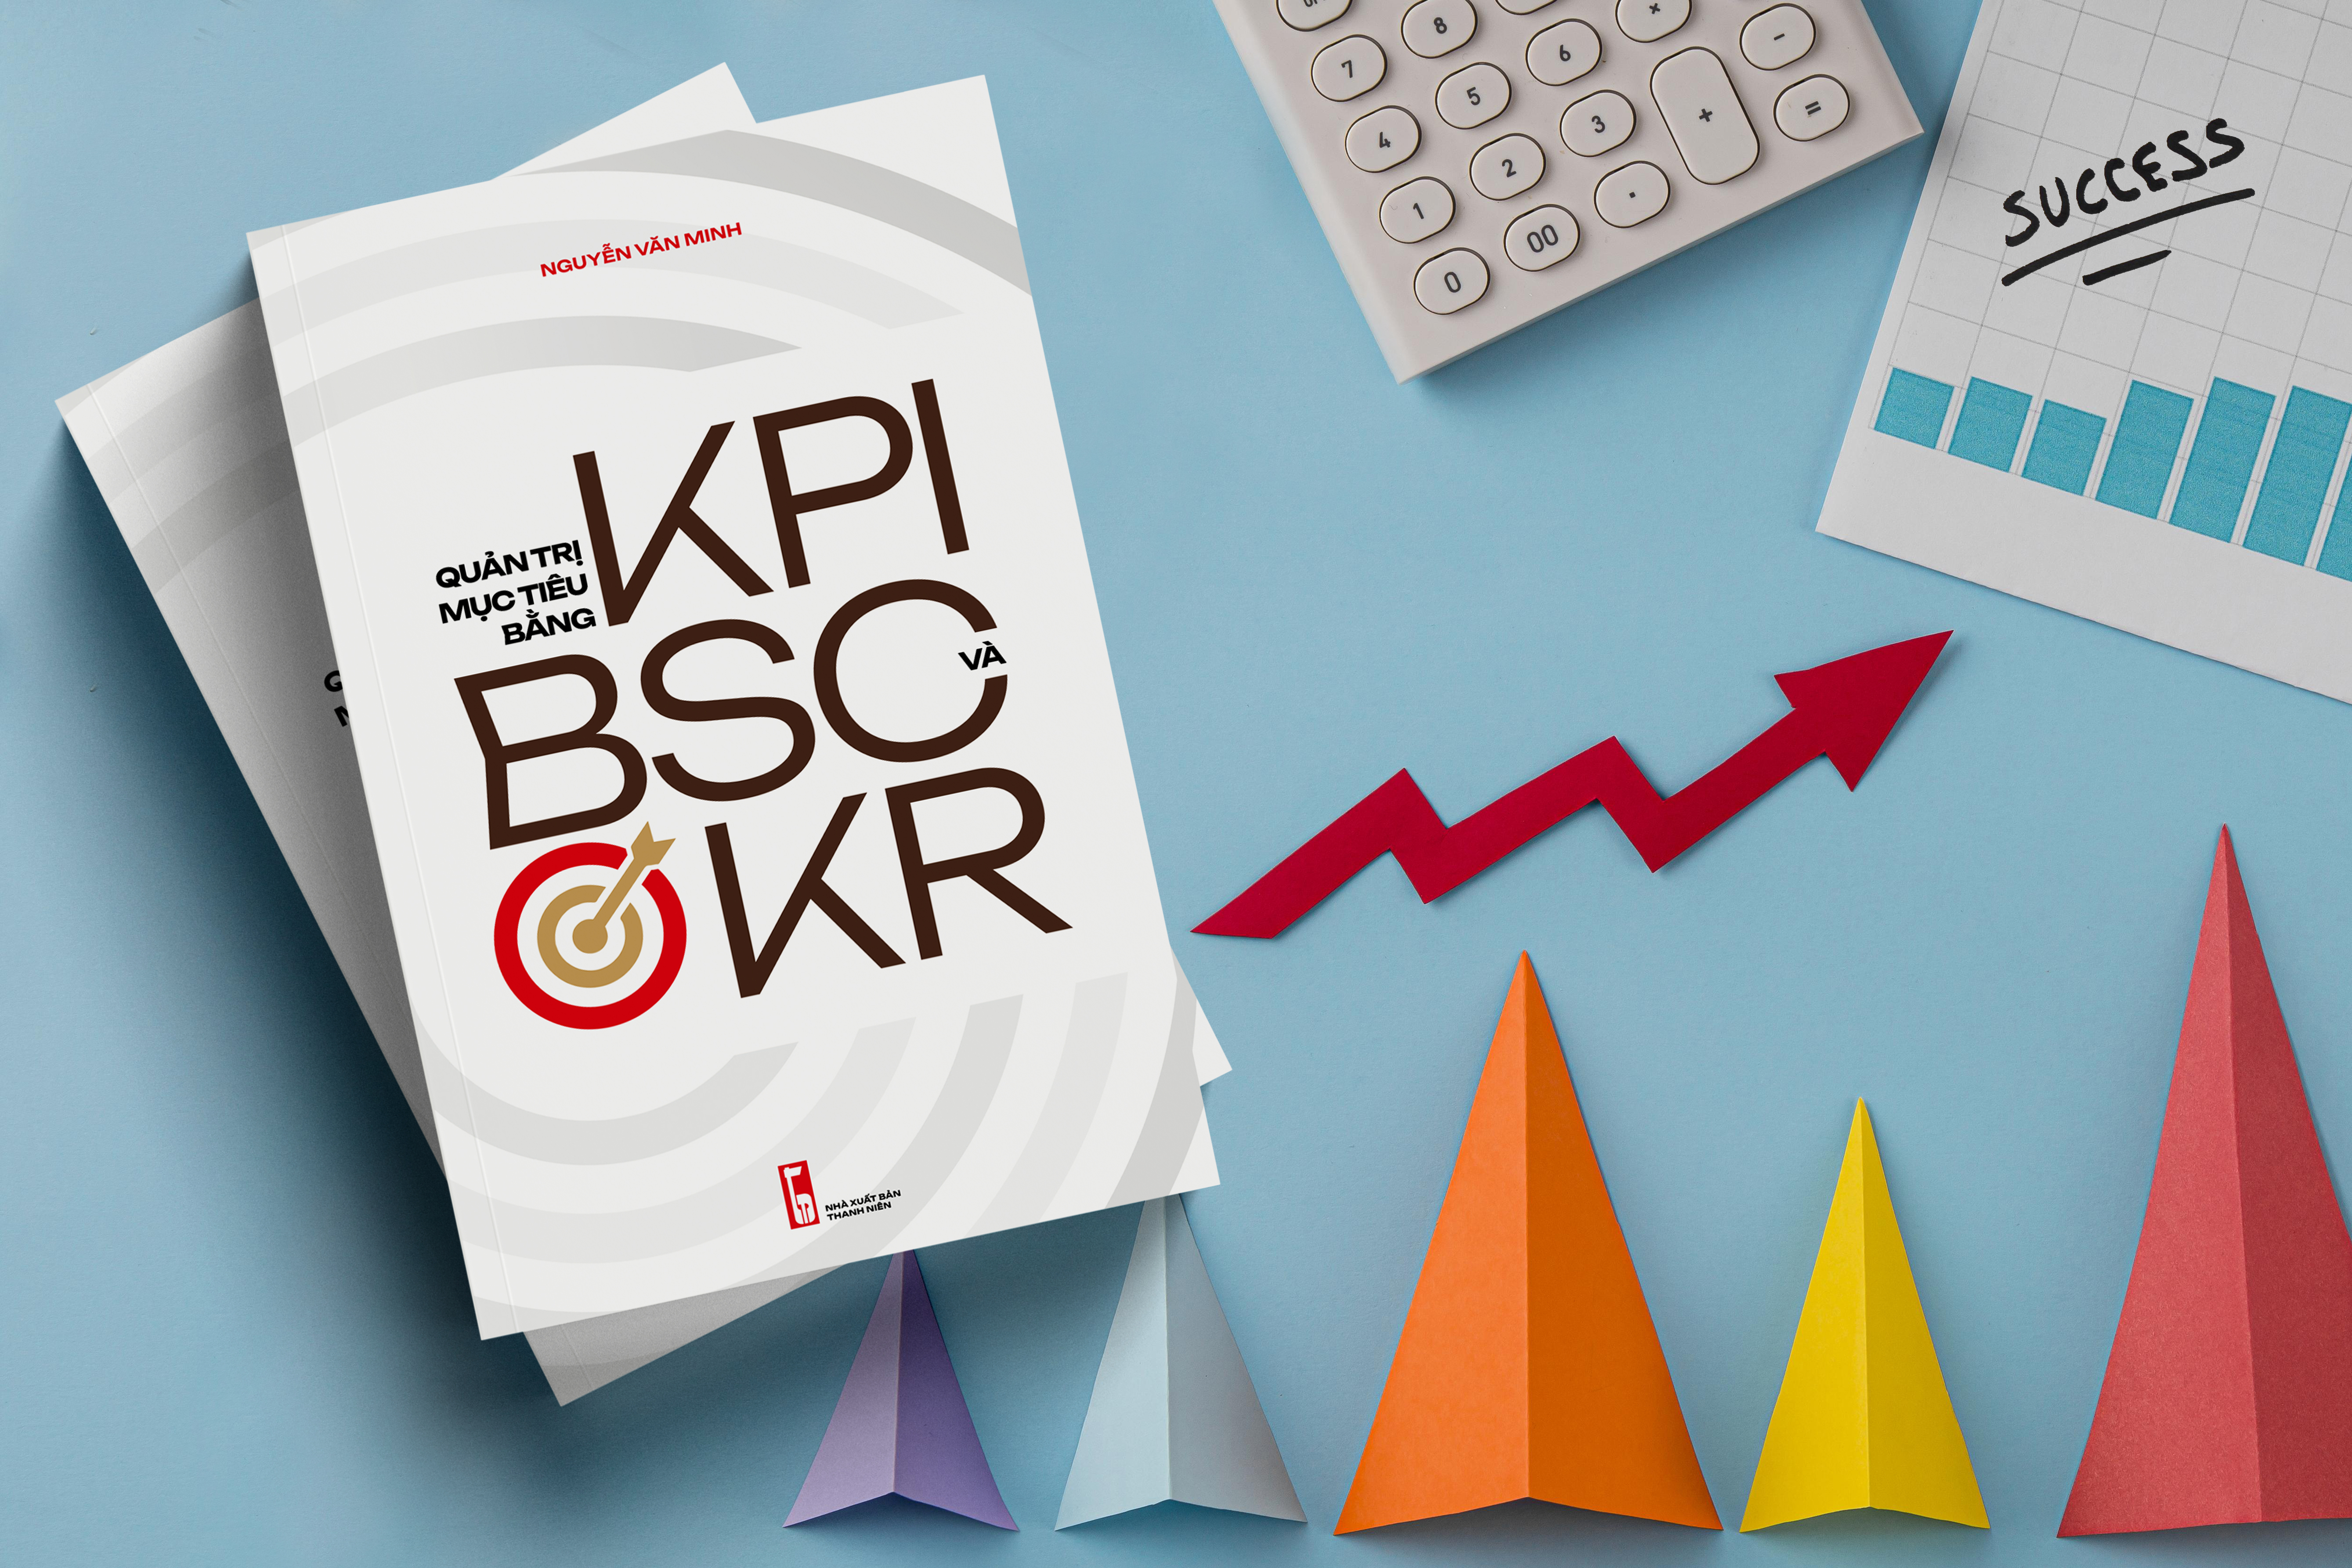 Quản trị mục tiêu bằng KPI, BSC và OKR